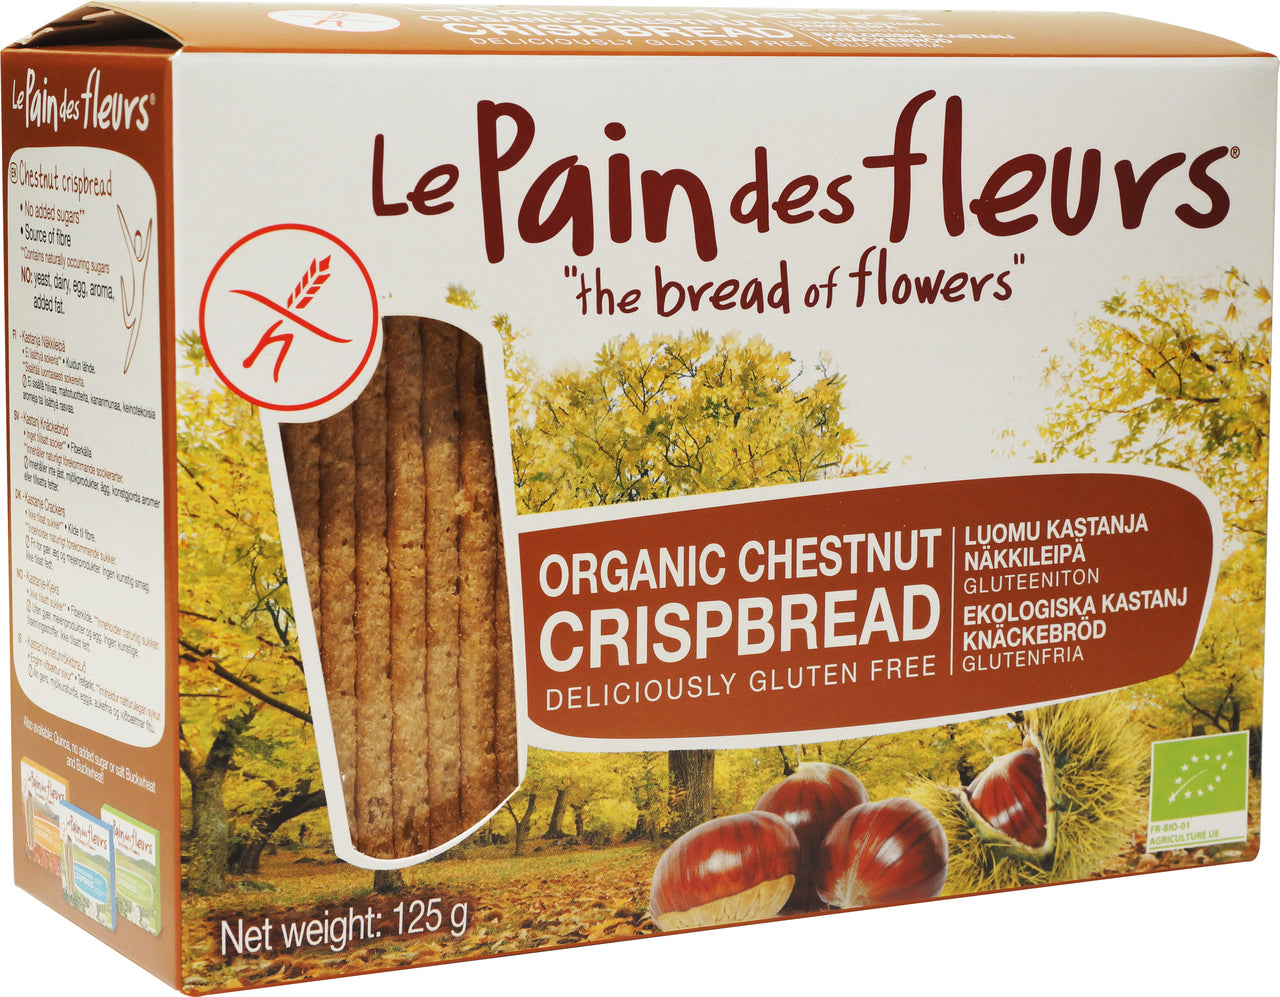 Le Pain des fleurs Organic Chestnut Crispbread (150g) - Lifestyle Markets